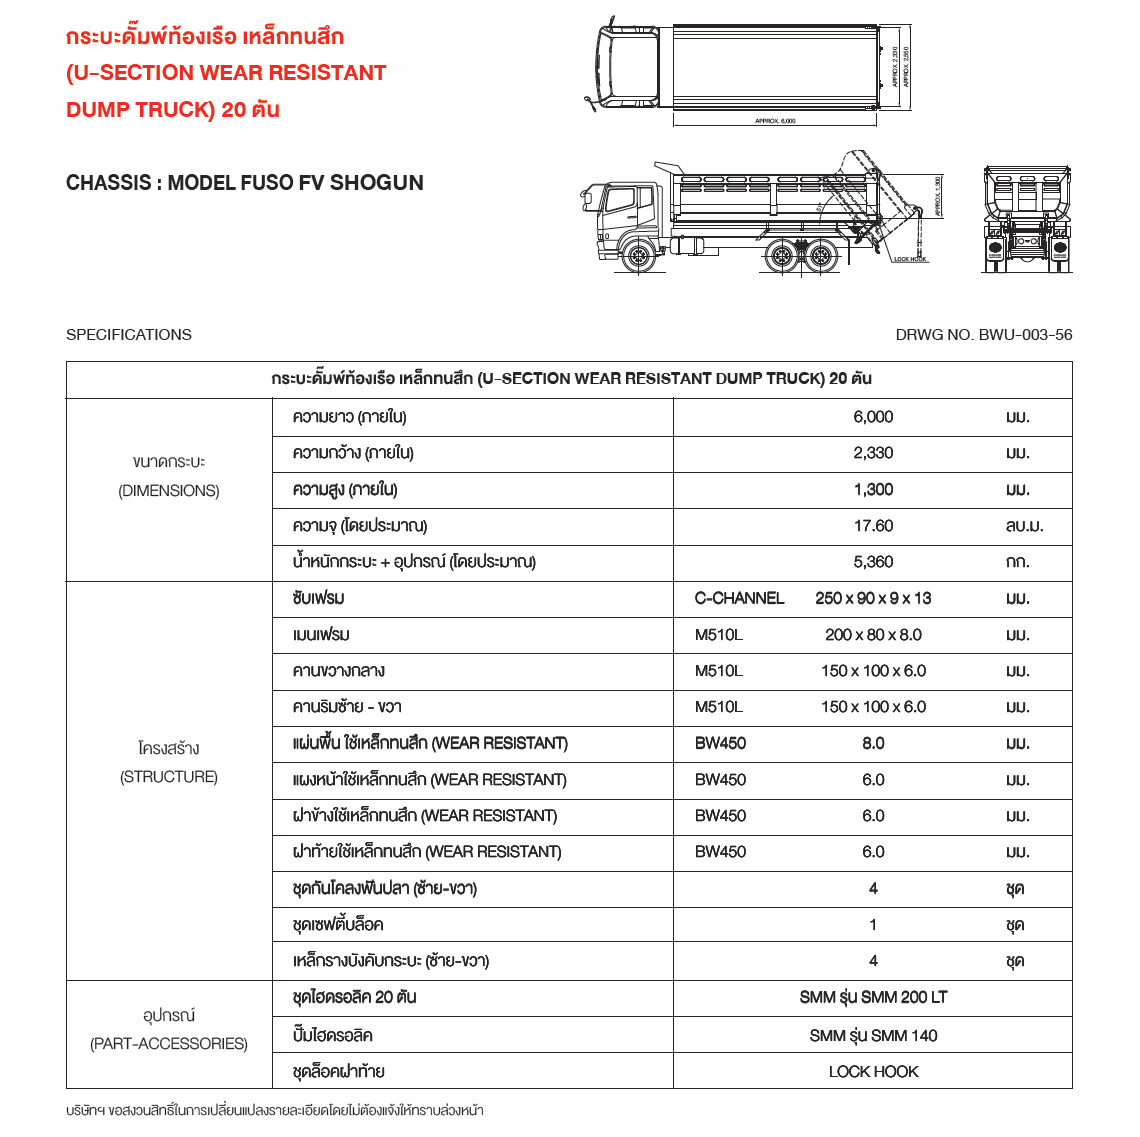 U-section Wear Resistant Dump Truck